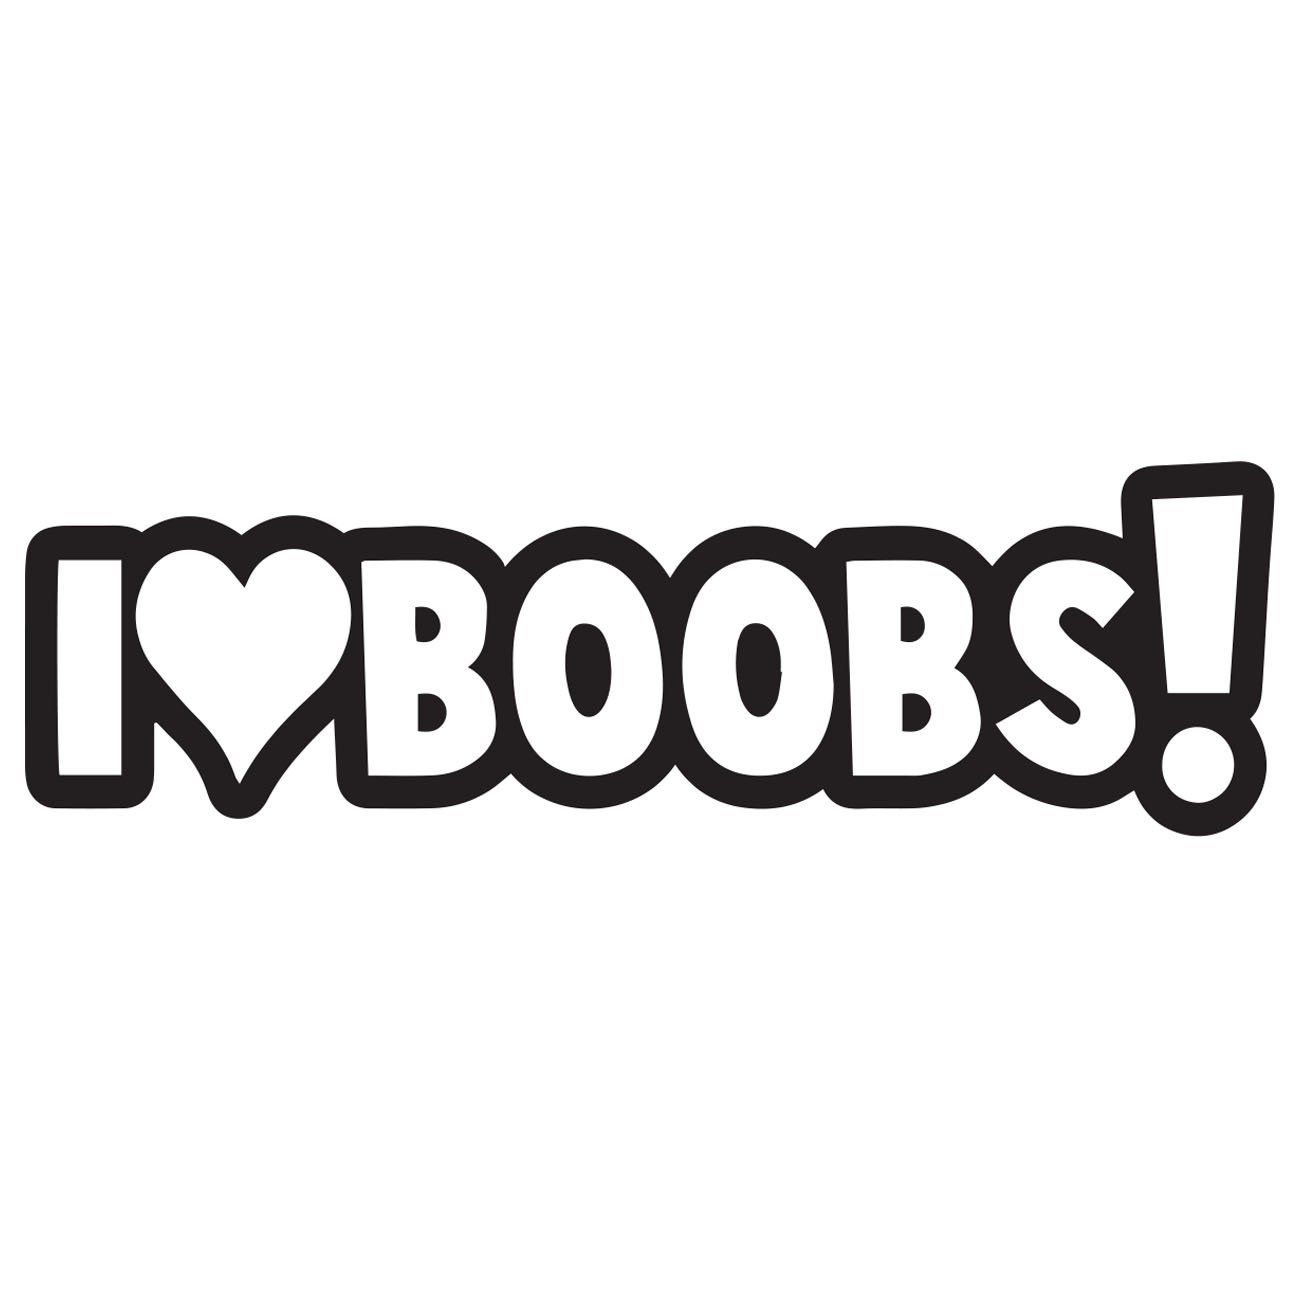 I Love boobs